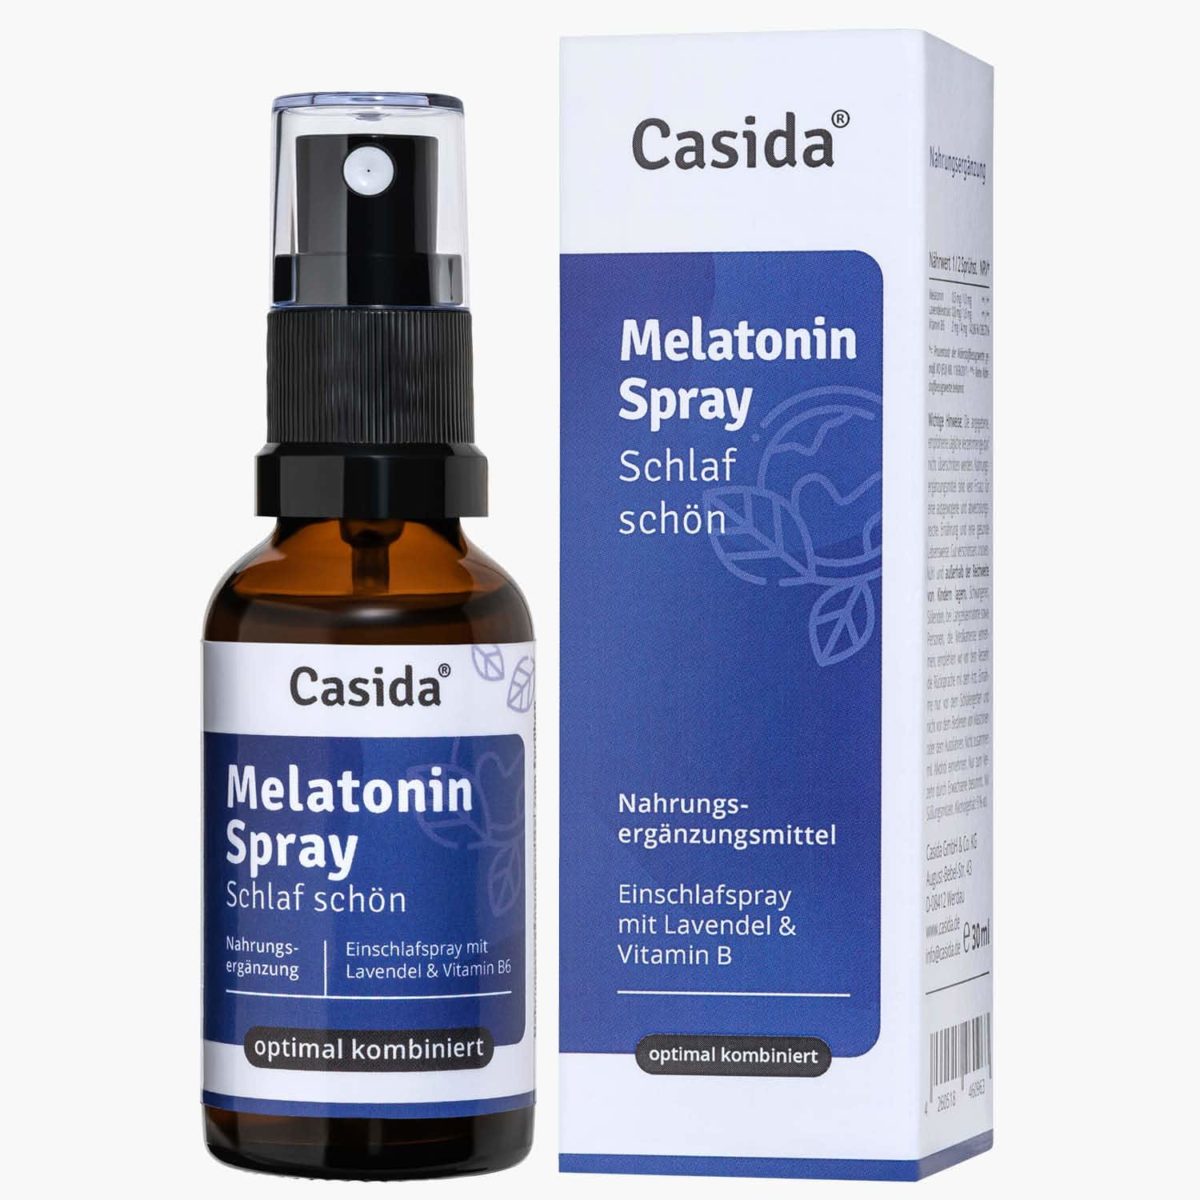 Casida Melatonin Spray Schlaf schön - 30 ml 17203782 Apotheke Guter Schlaf Gute Nacht besser schlafen Lavendel Vitamin B2 B6